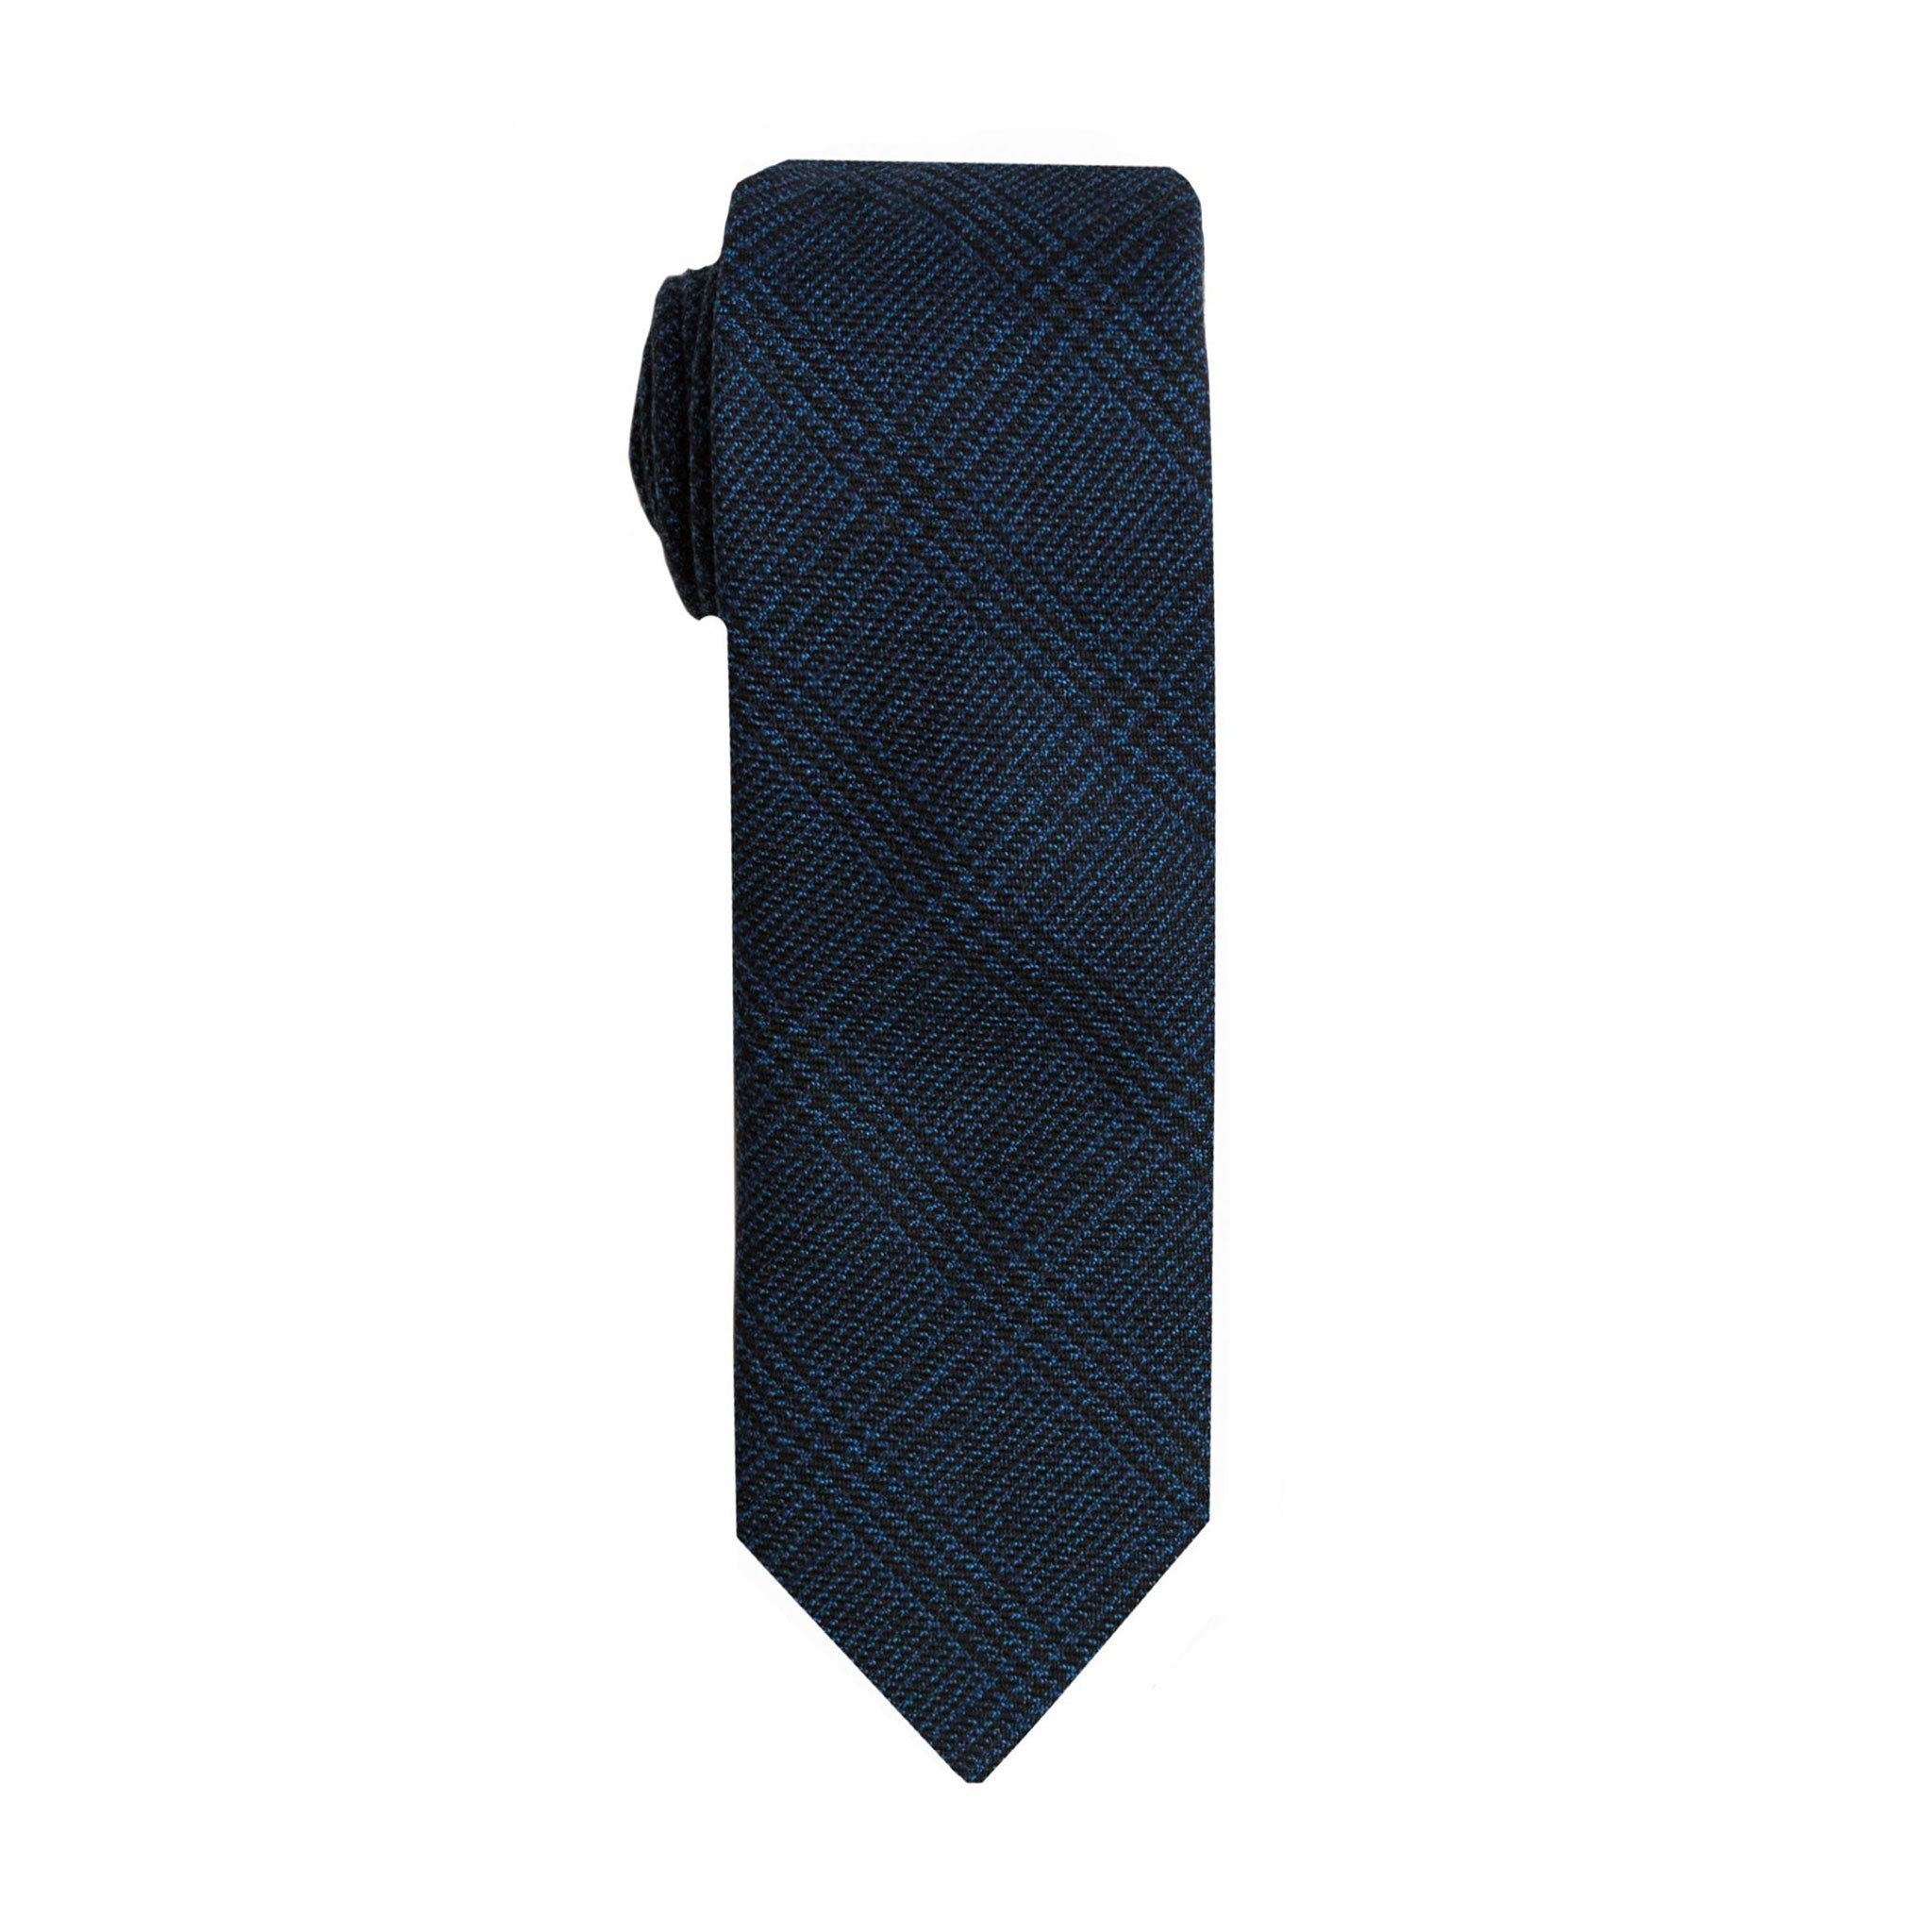 Indigo Plaid Tie (Wall Street) - SprezzaBox